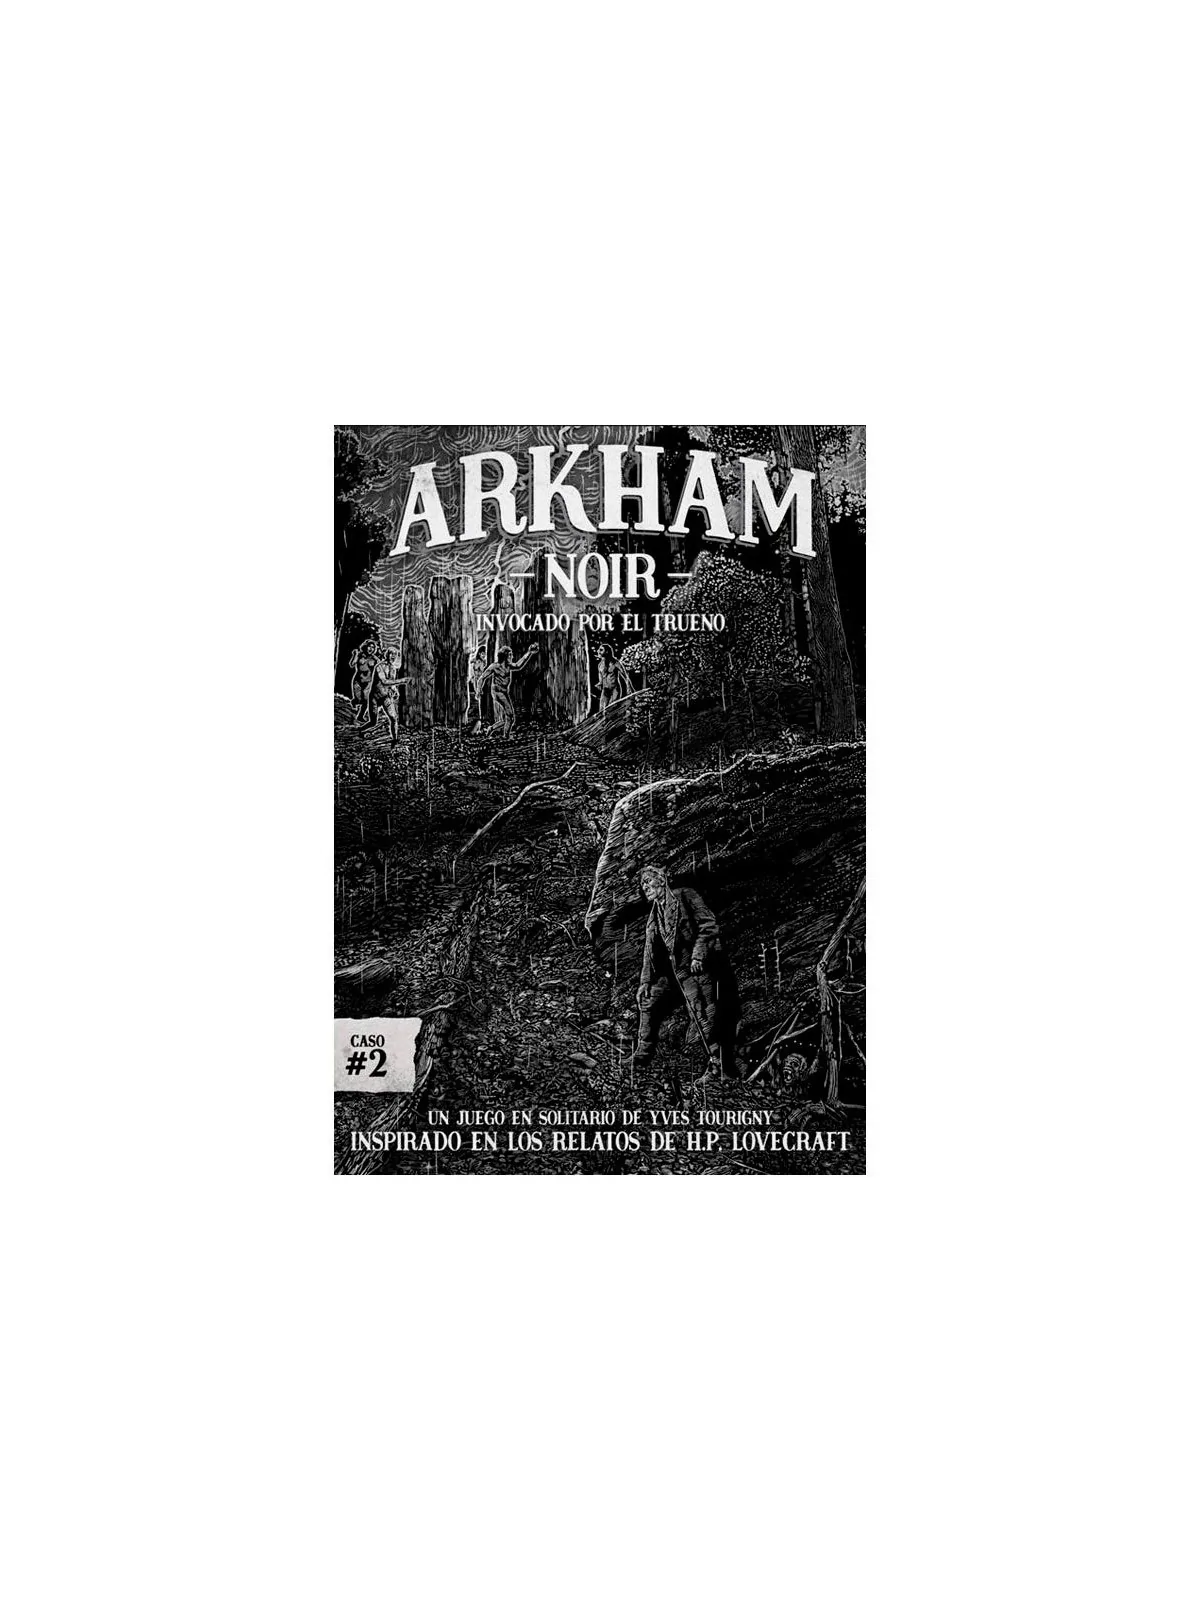 Comprar Arkham Noir 2: Invocado por el Trueno barato al mejor precio 1